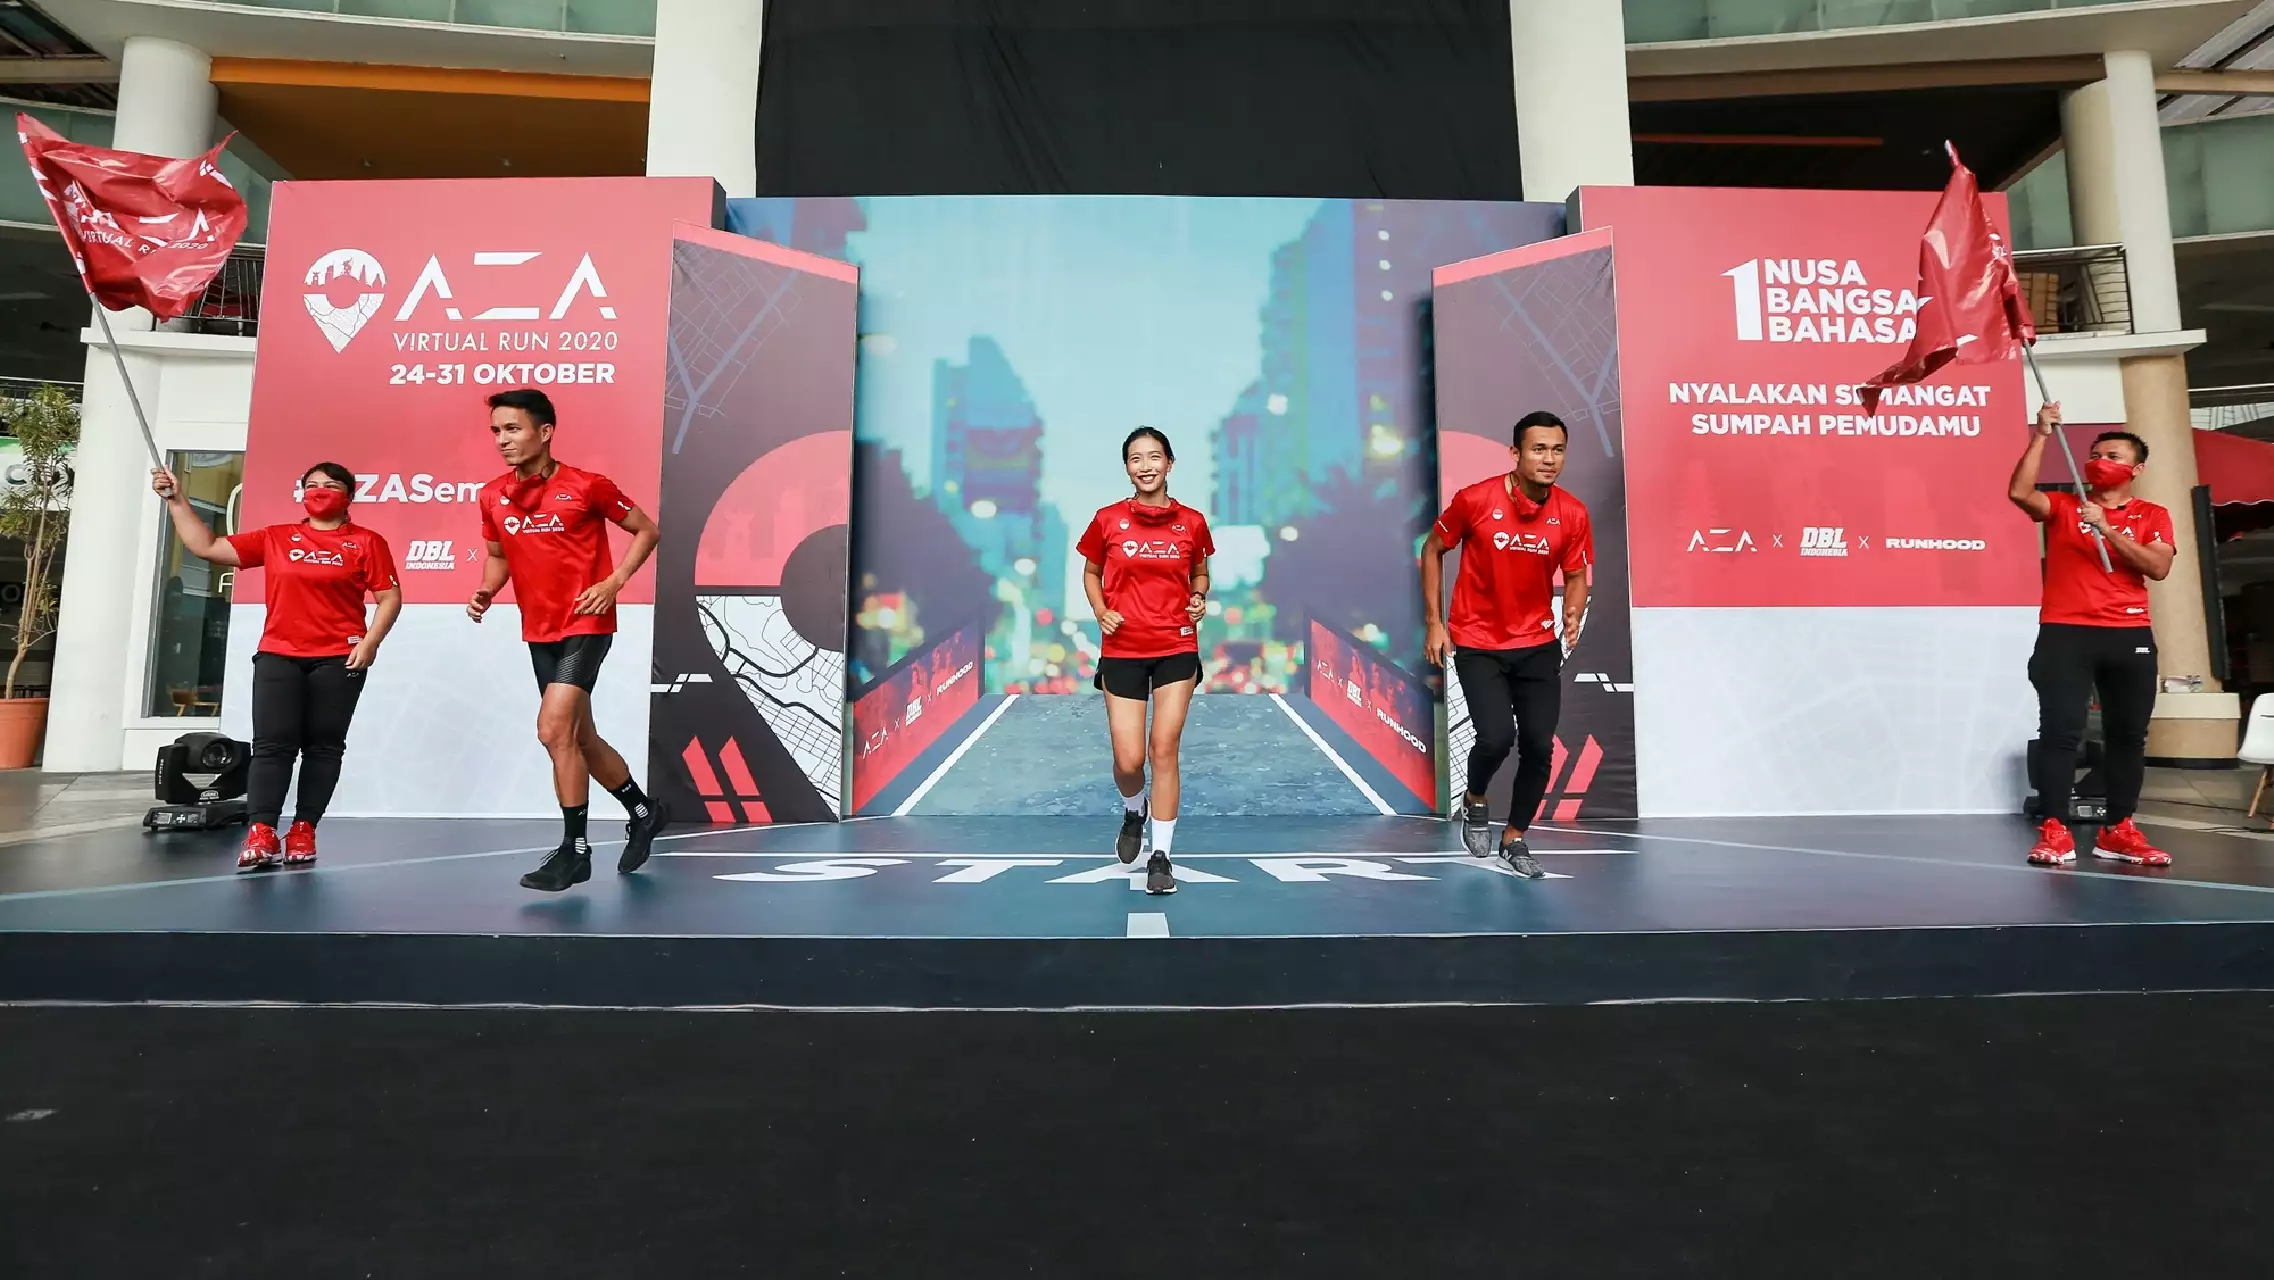 Ribuan pelari seluruh Indonesia ikuti ajang virtual run ini, seru nih